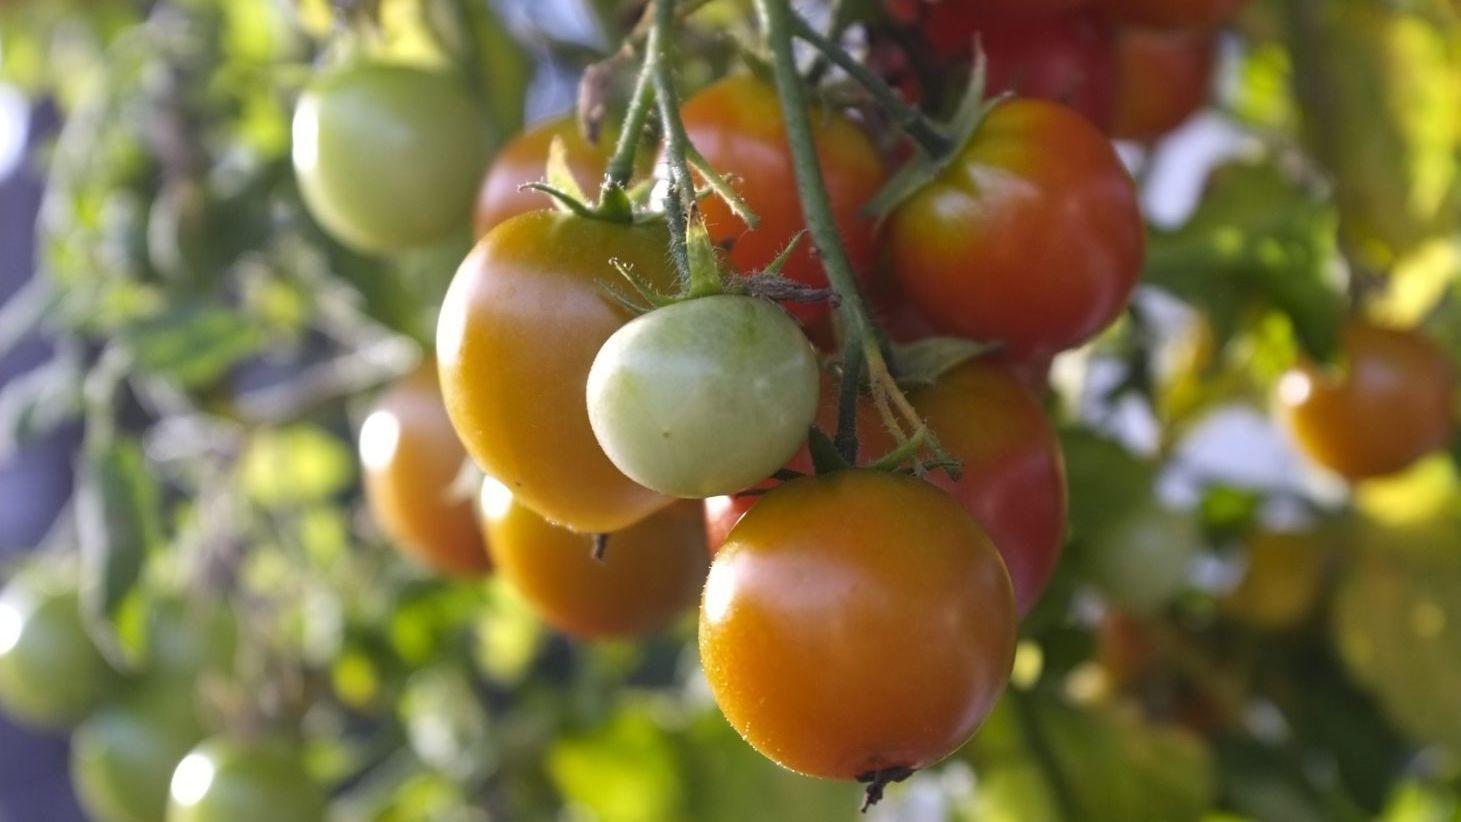 PLANTEGLEDE: Har du ikke dyrket tomatplanter går du glipp av en fantastisk smaksopplevelse. Lett er det også. Foto: Gisle Oddstad